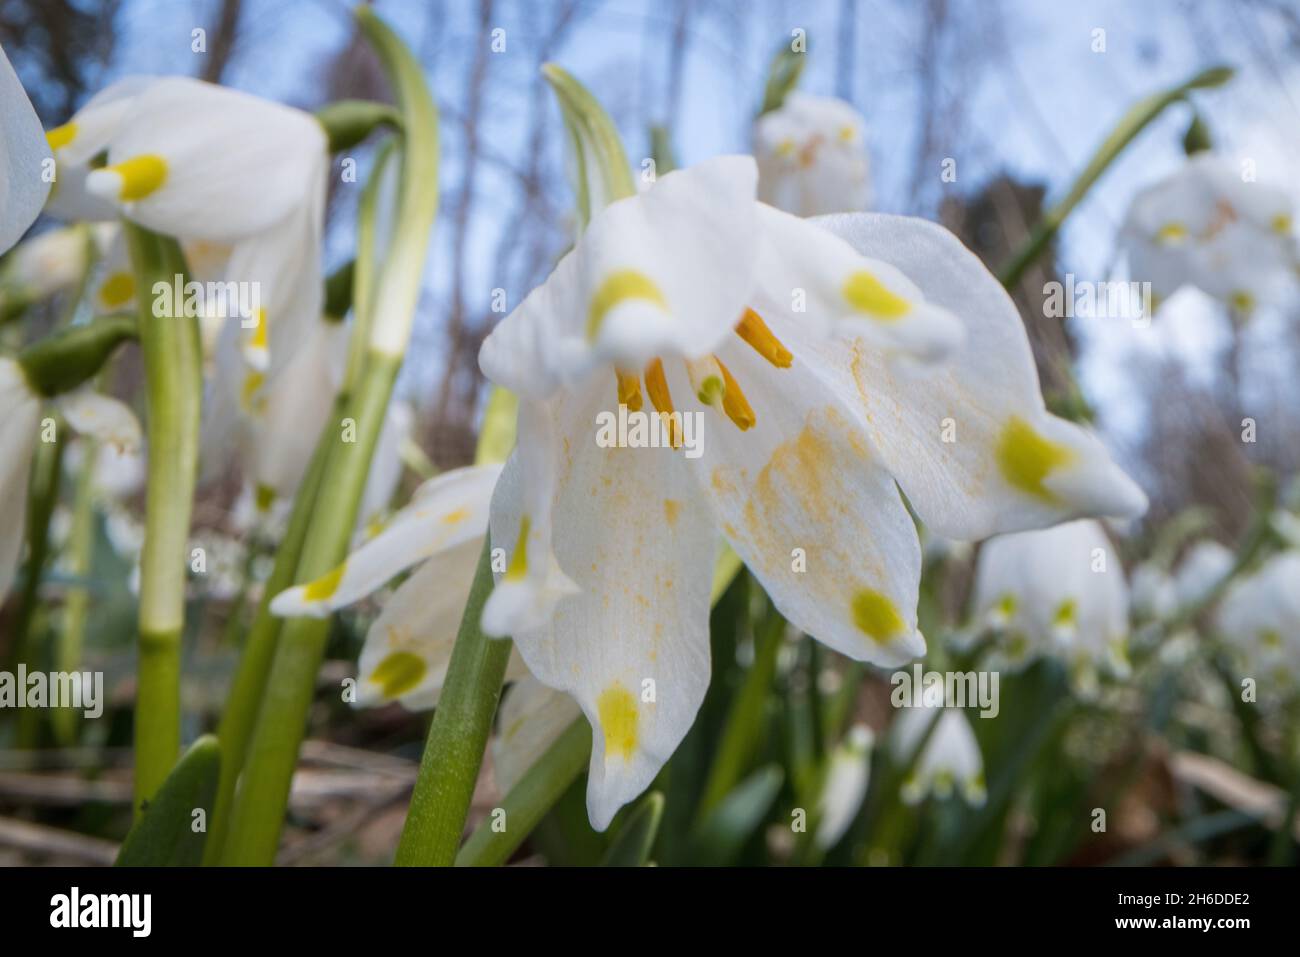 spring snowflake (Leucojum vernum), single flower close-up, Germany Stock Photo